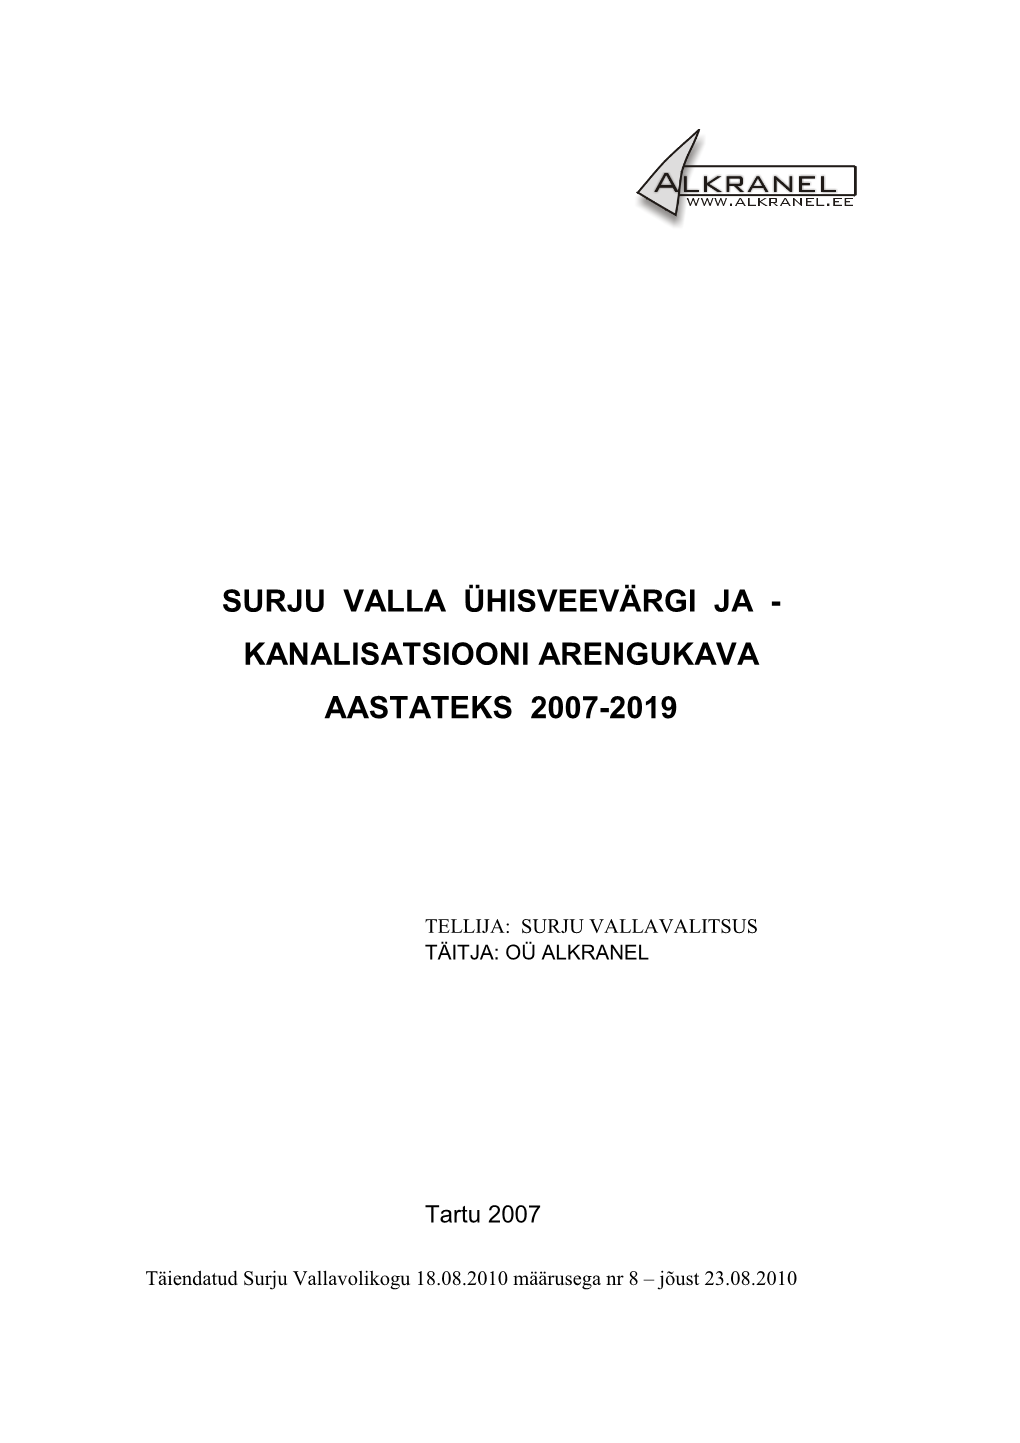 Surju Valla Ühisveevärgi Ja - Kanalisatsiooni Arengukava Aastateks 2007-2019